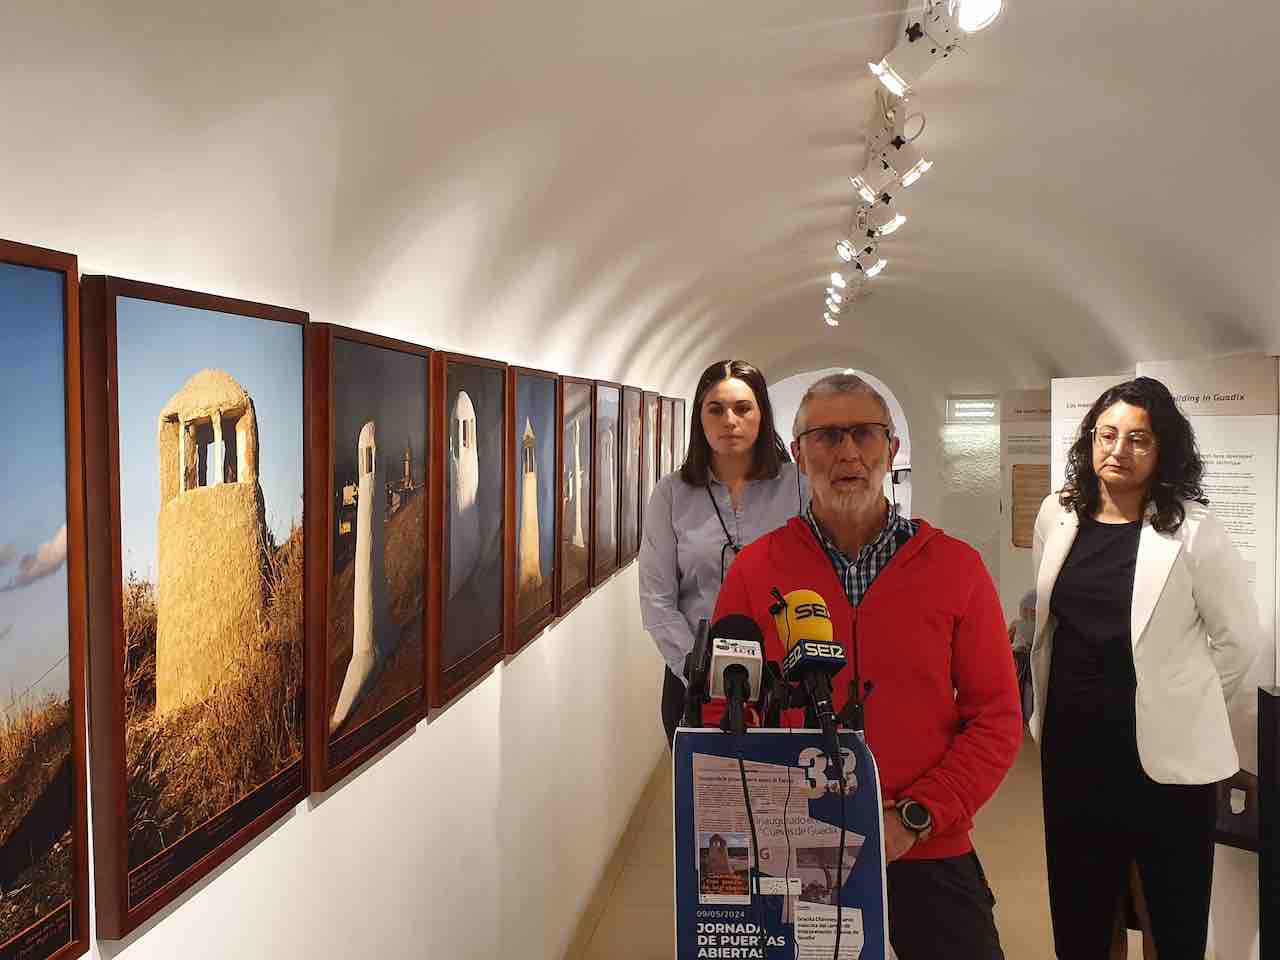 El Centro de Interpretación Cuevas de Guadix acoge la exposición de fotografía y poesía “Chimeneas con poesía de las Cuevas de Guadix”